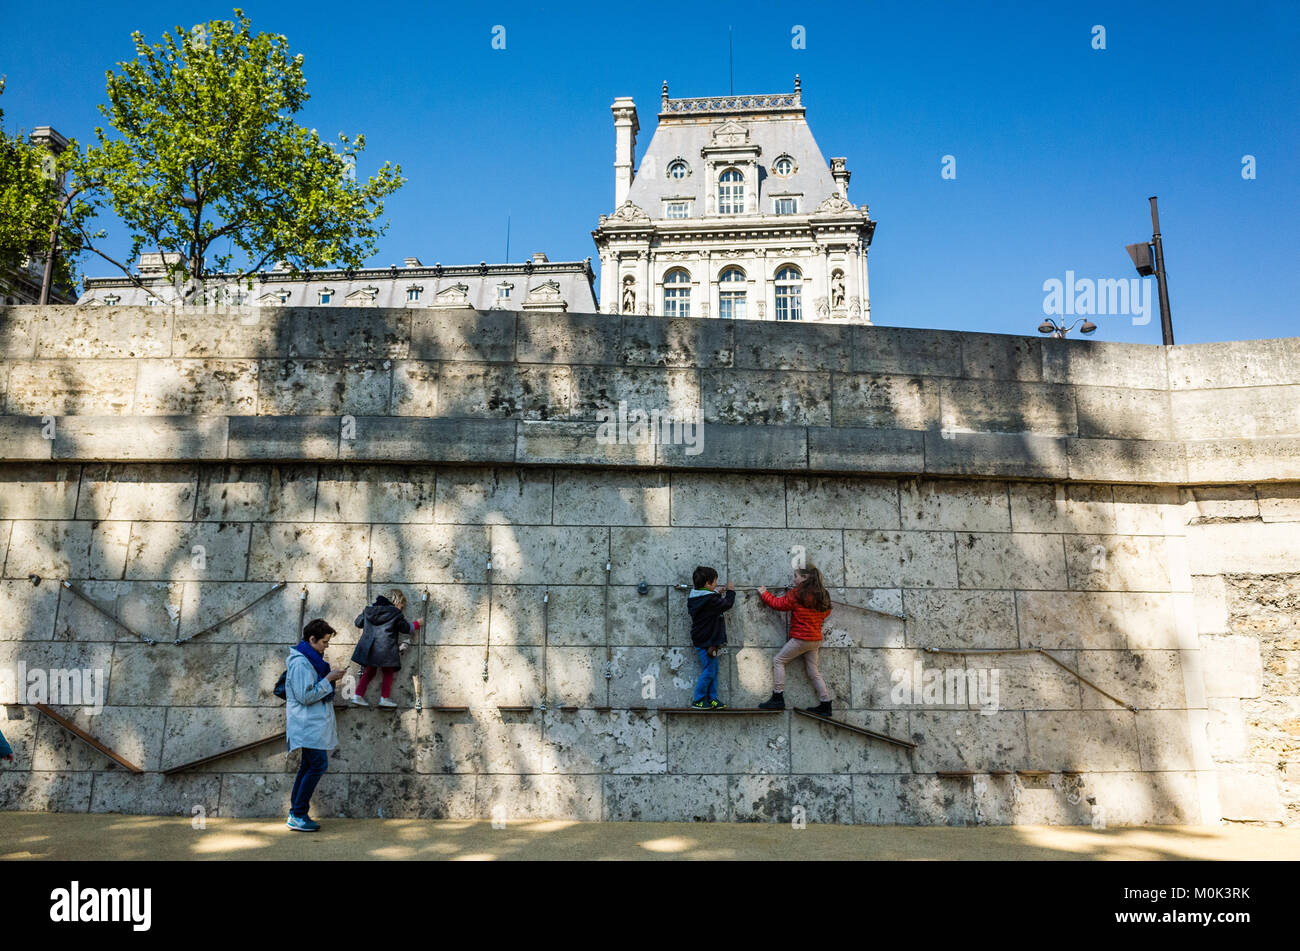 Paris, France - 19 Avril 2017 : Des enfants jouent dans une aire au-dessous de l'hôtel de ville de Paris sur l'ancienne autoroute de Georges Pompidou, qui est devenu Banque D'Images